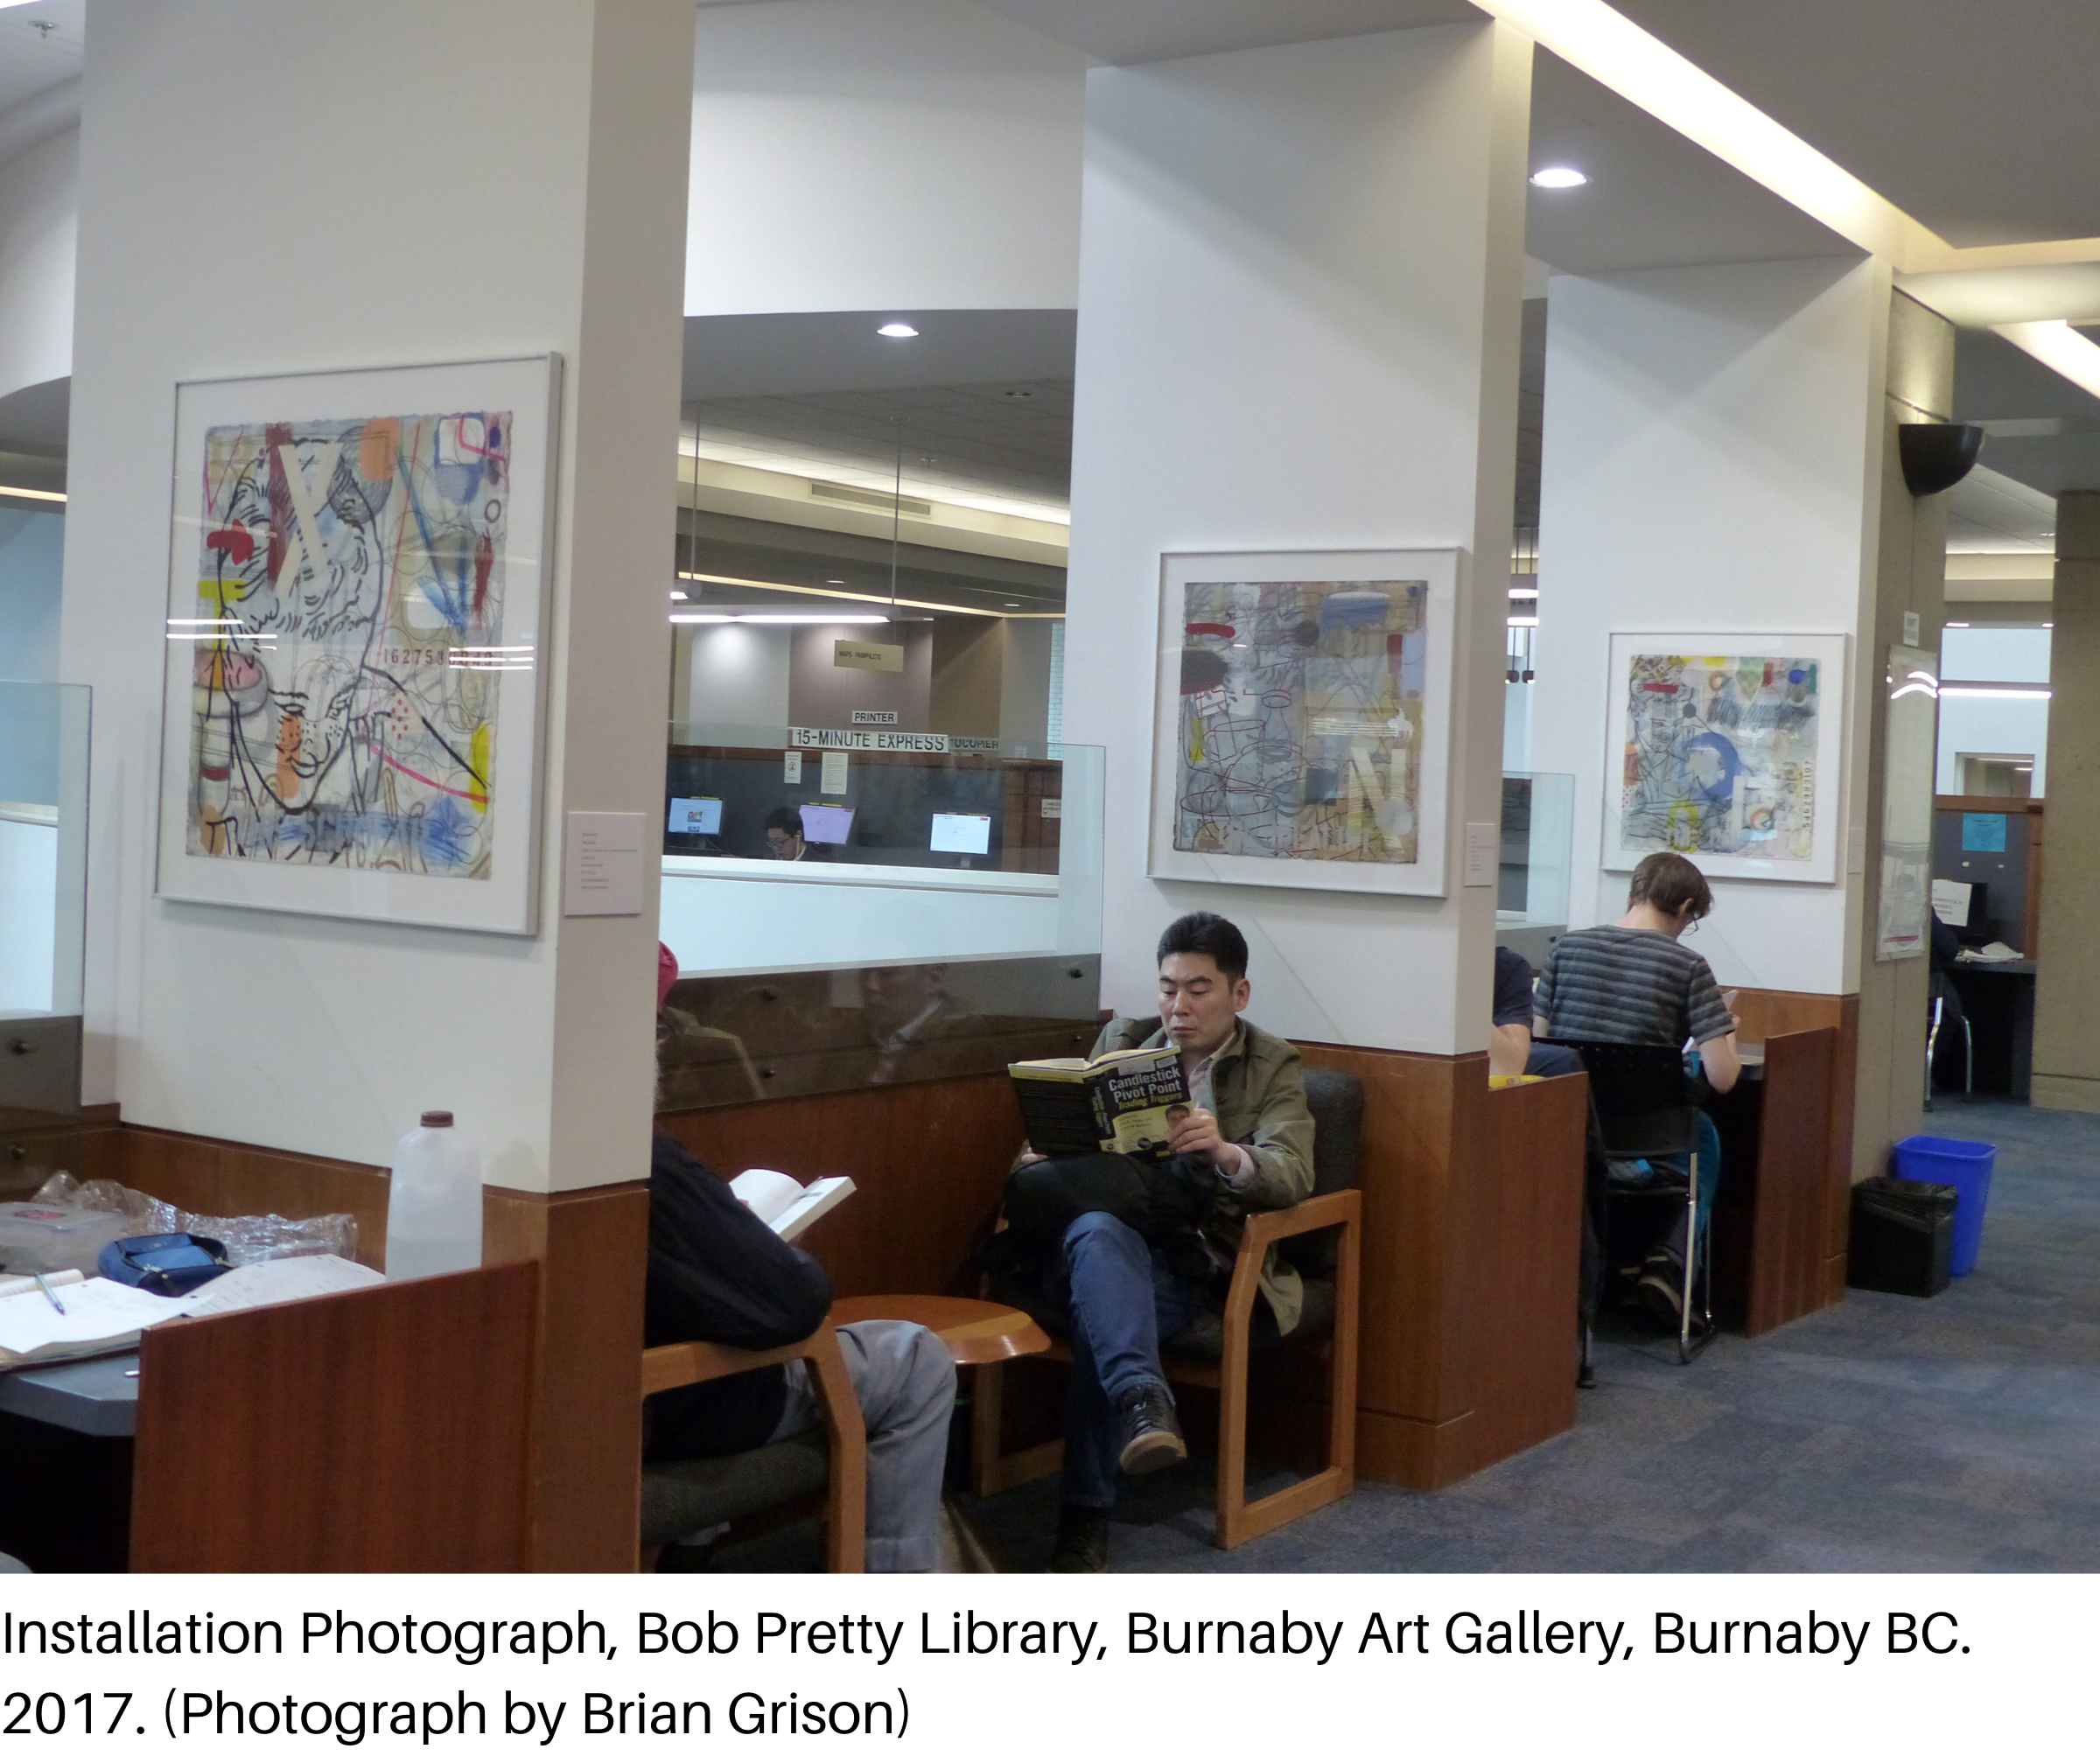 Installation Photograph, Bob Pretty Library, Burnaby Art Gallery, Burnaby BC. 2017. (Photograph by Brian Grison)